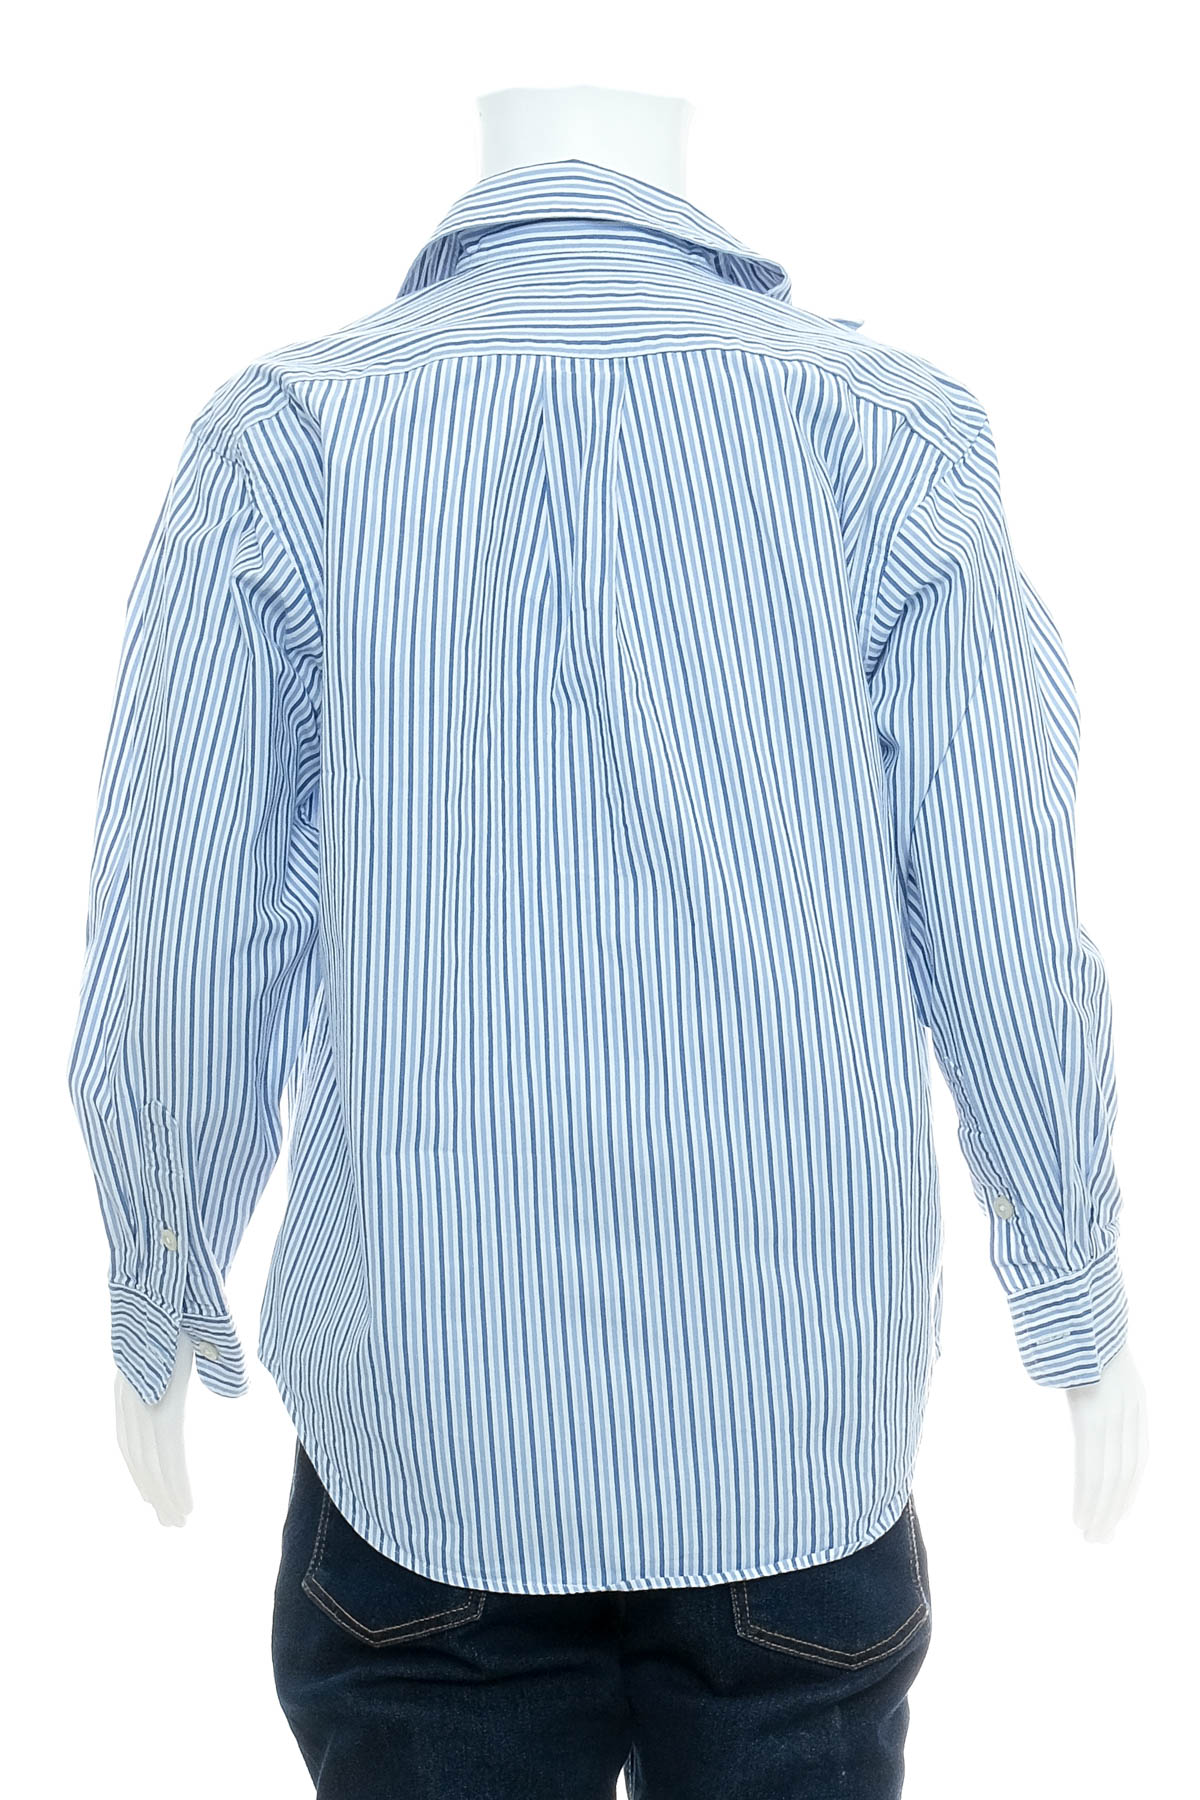 Boys' shirt - Polo by Ralph Lauren - 1